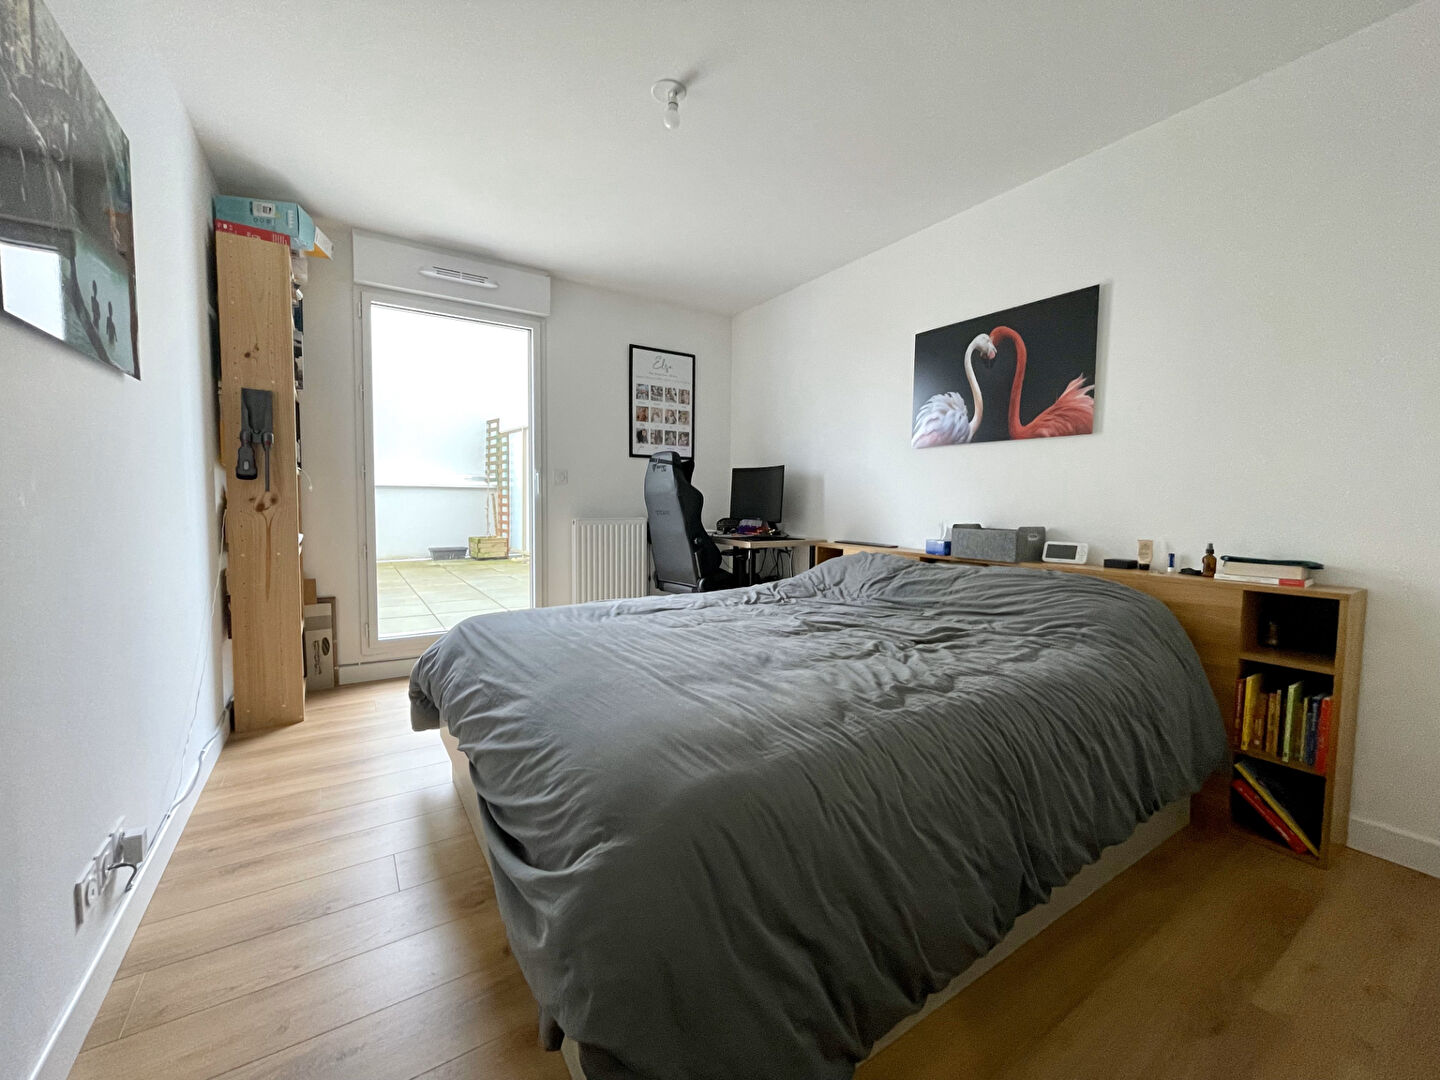 Appartement 3 pièces - 69 m² environ - 55575051f.jpg | Kermarrec Habitation